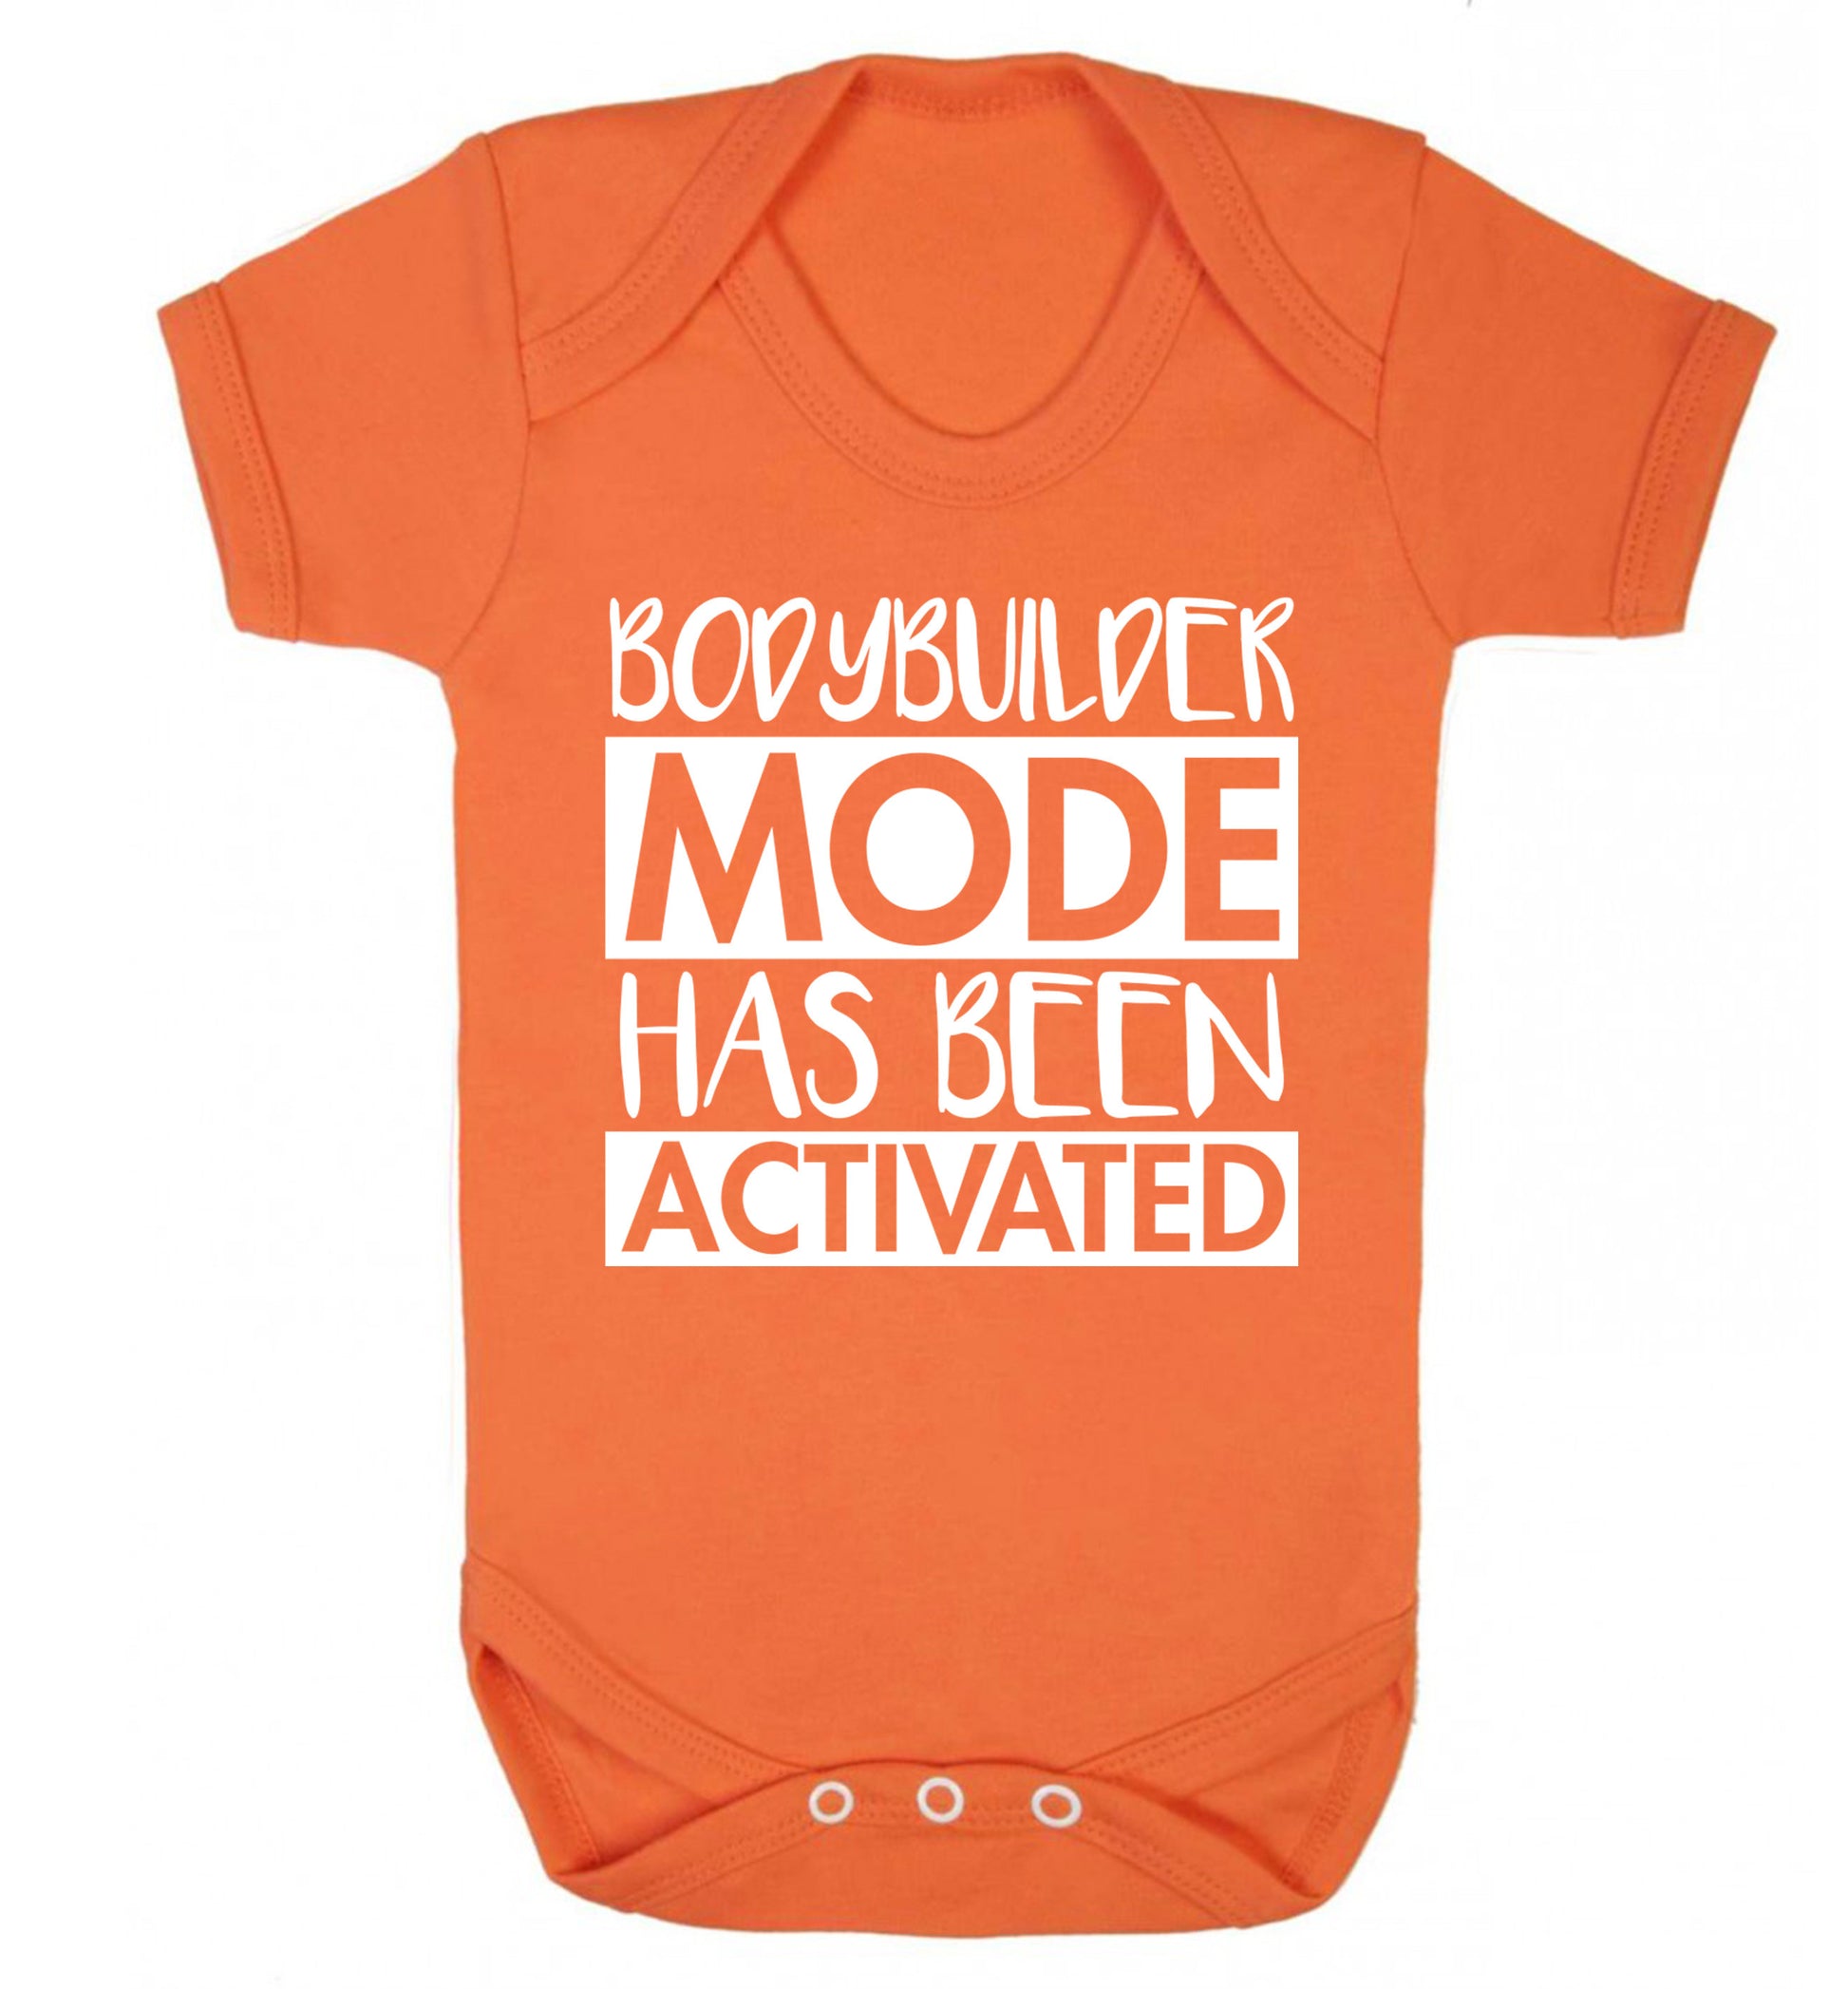 Bodybuilder mode activated Baby Vest orange 18-24 months